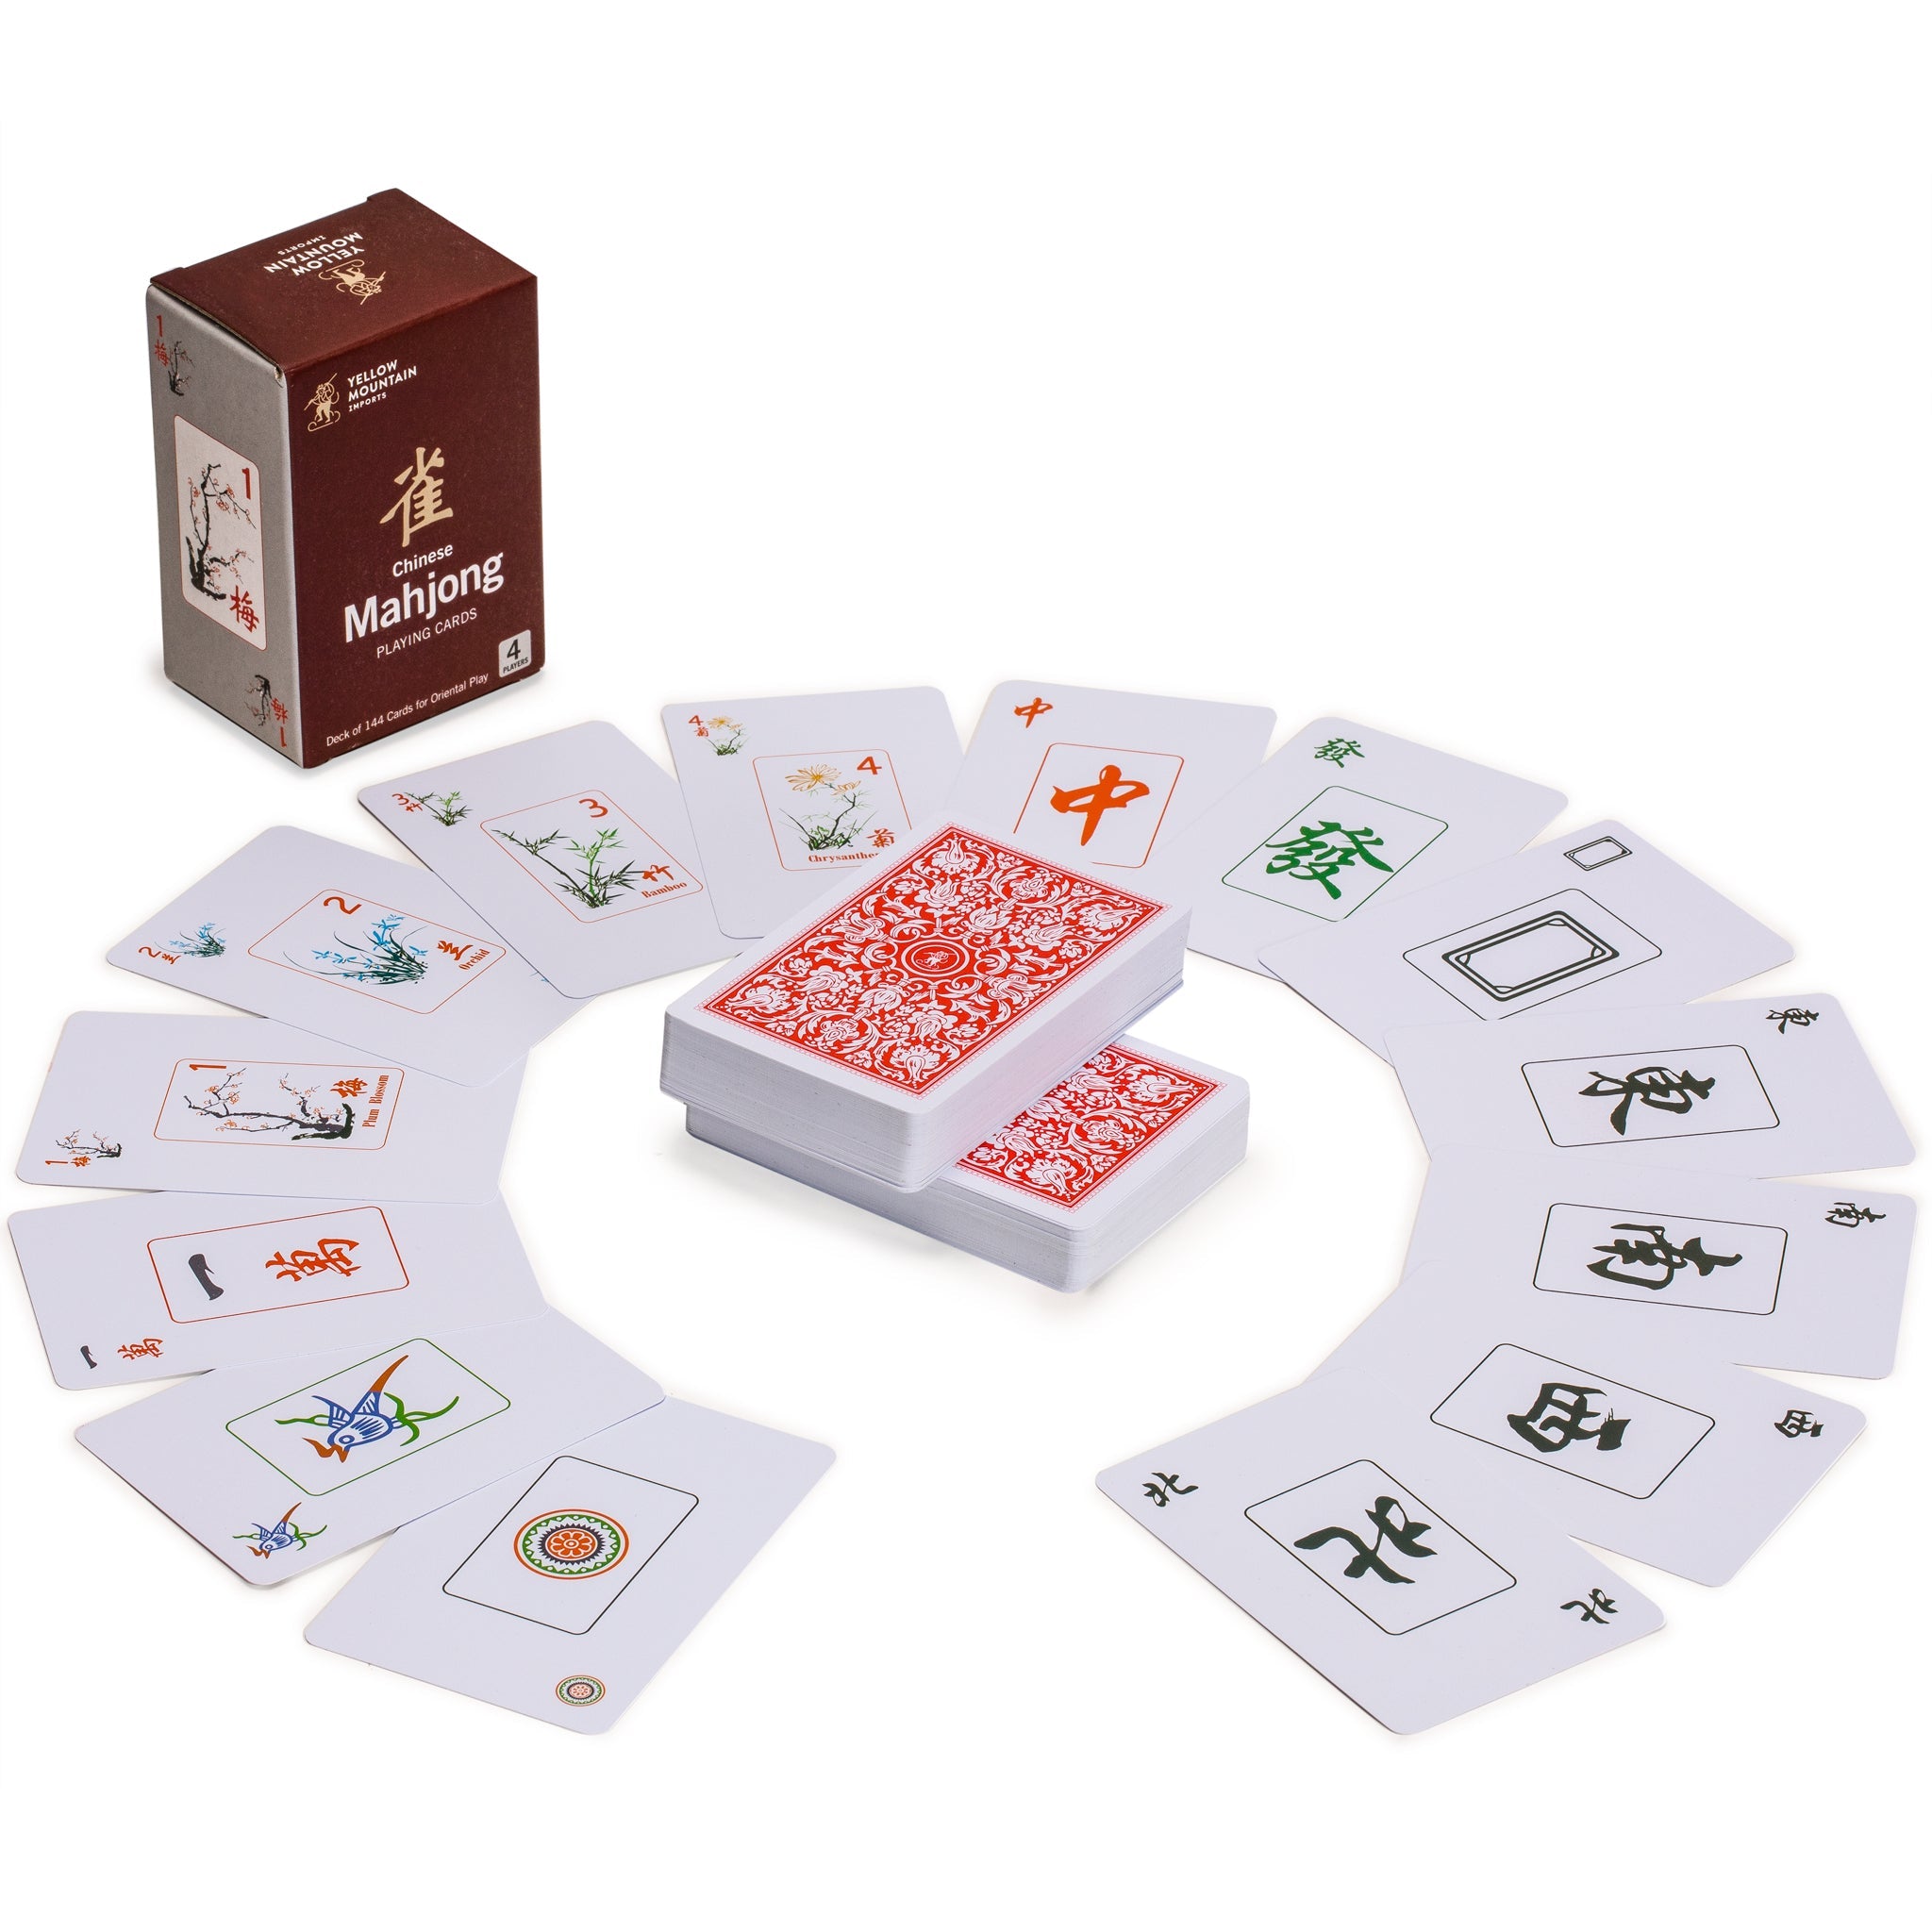  Yellow Mountain Imports Chinese Mahjong Game Set, Jet